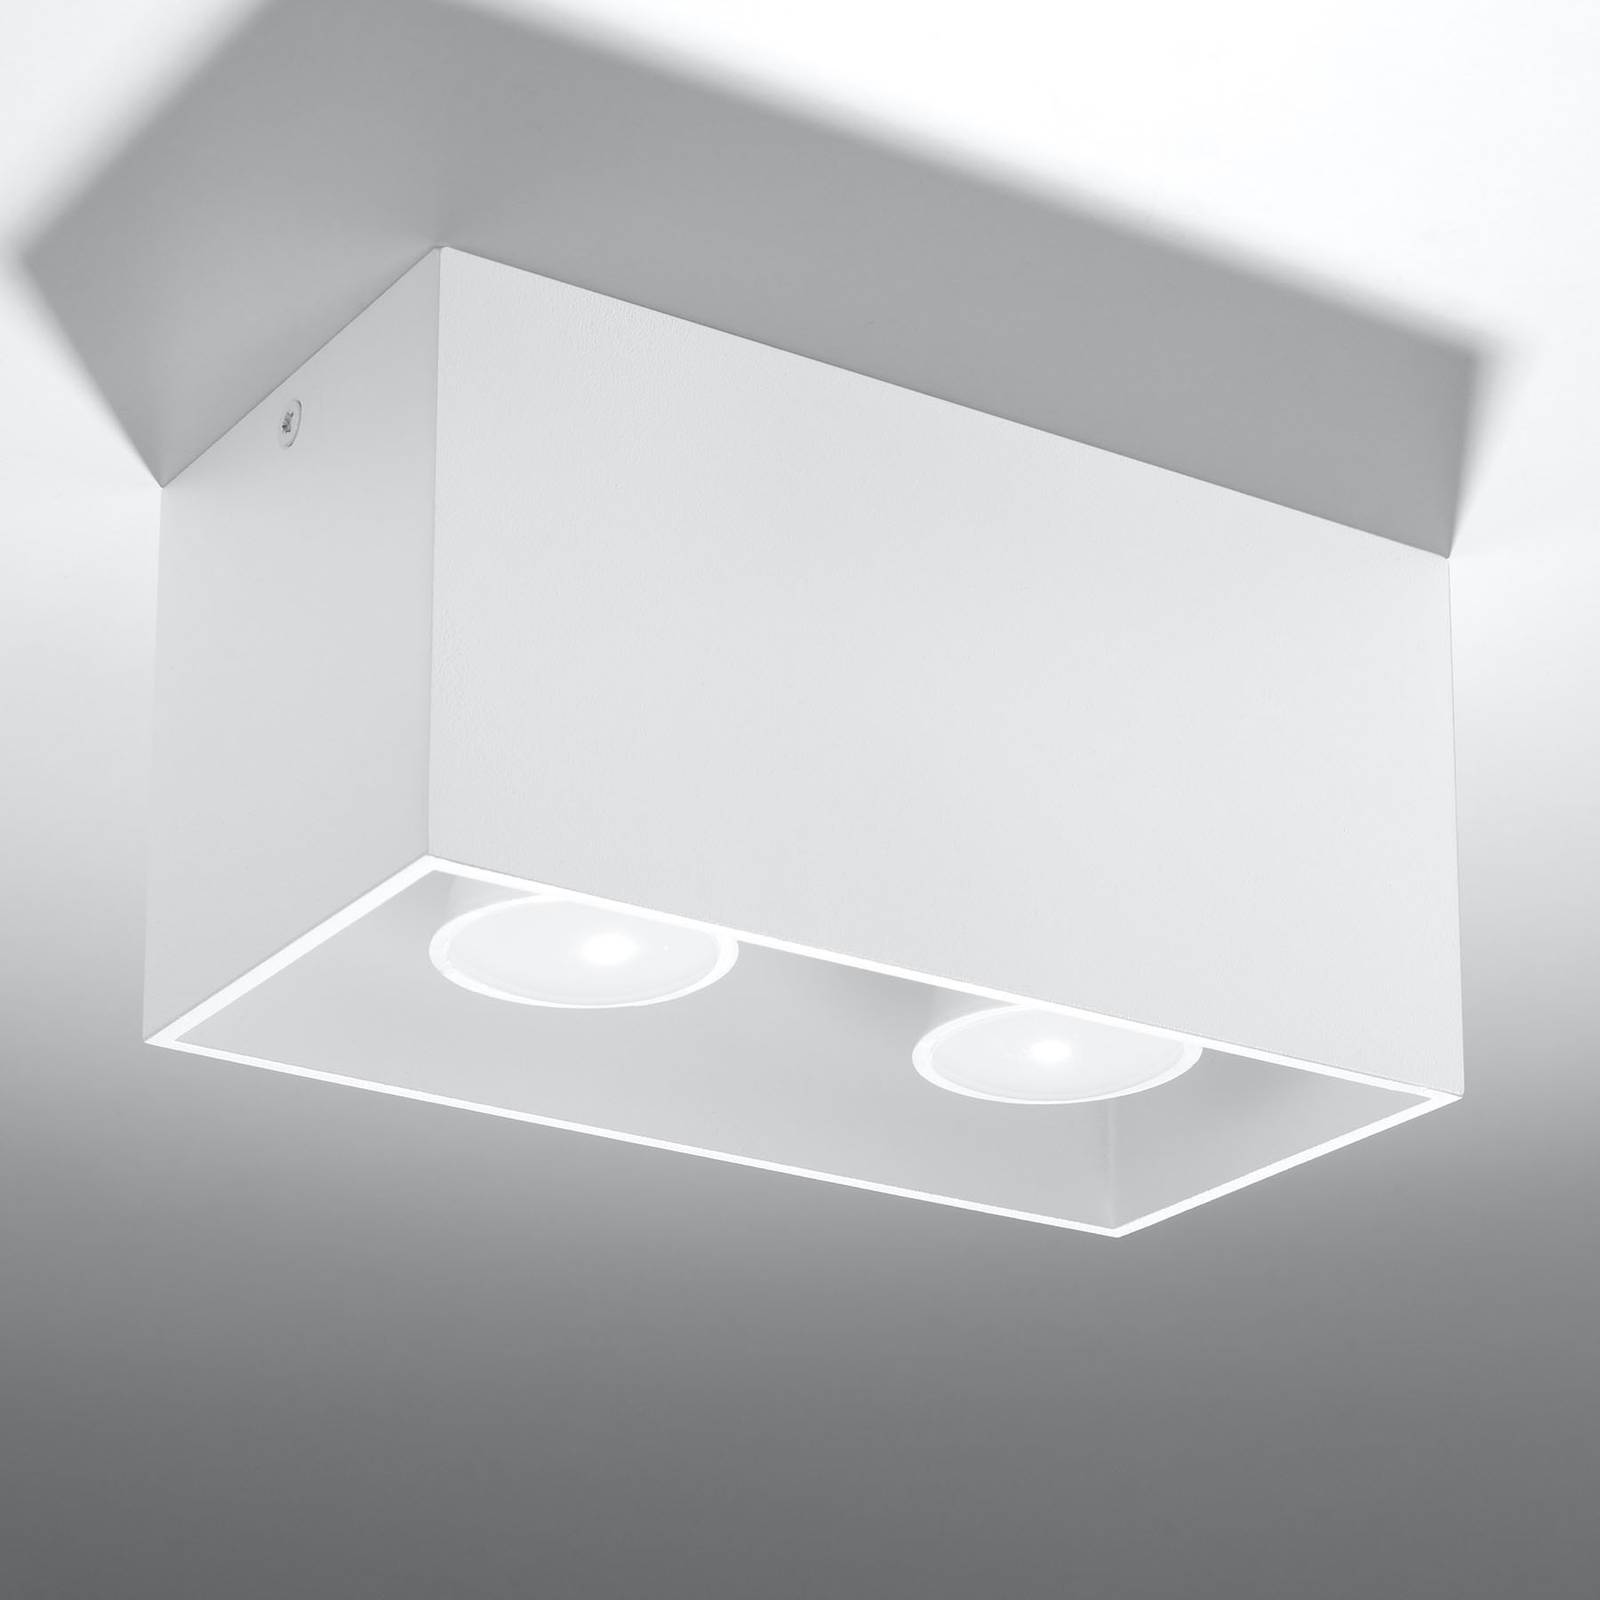 Lampa sufitowa Ara Maxi aluminium 2-pkt. biała